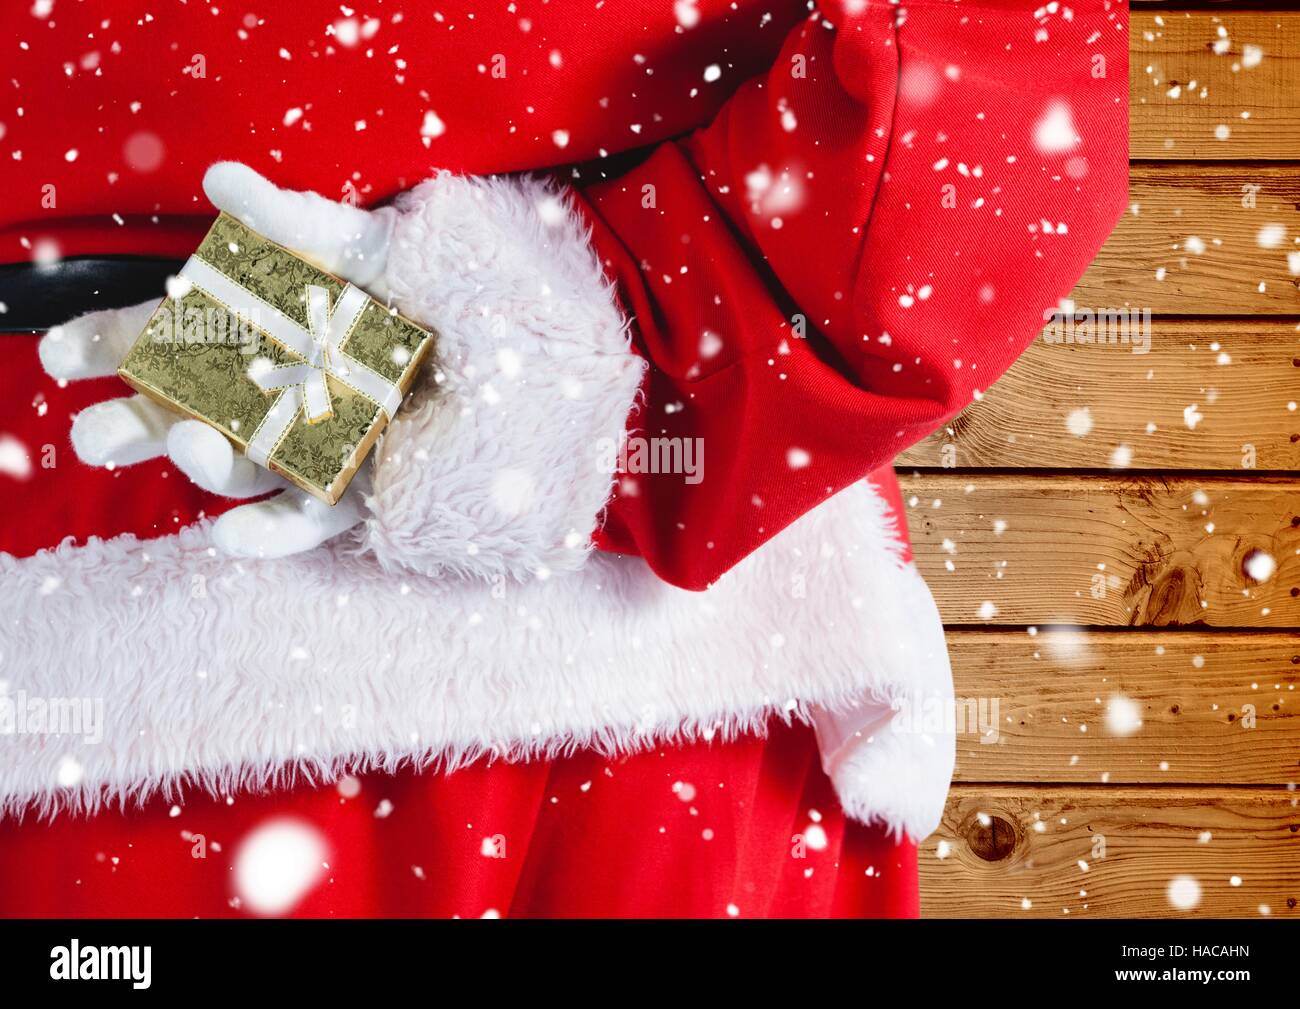 Santa hiding christmas gift behind his back Stock Photo